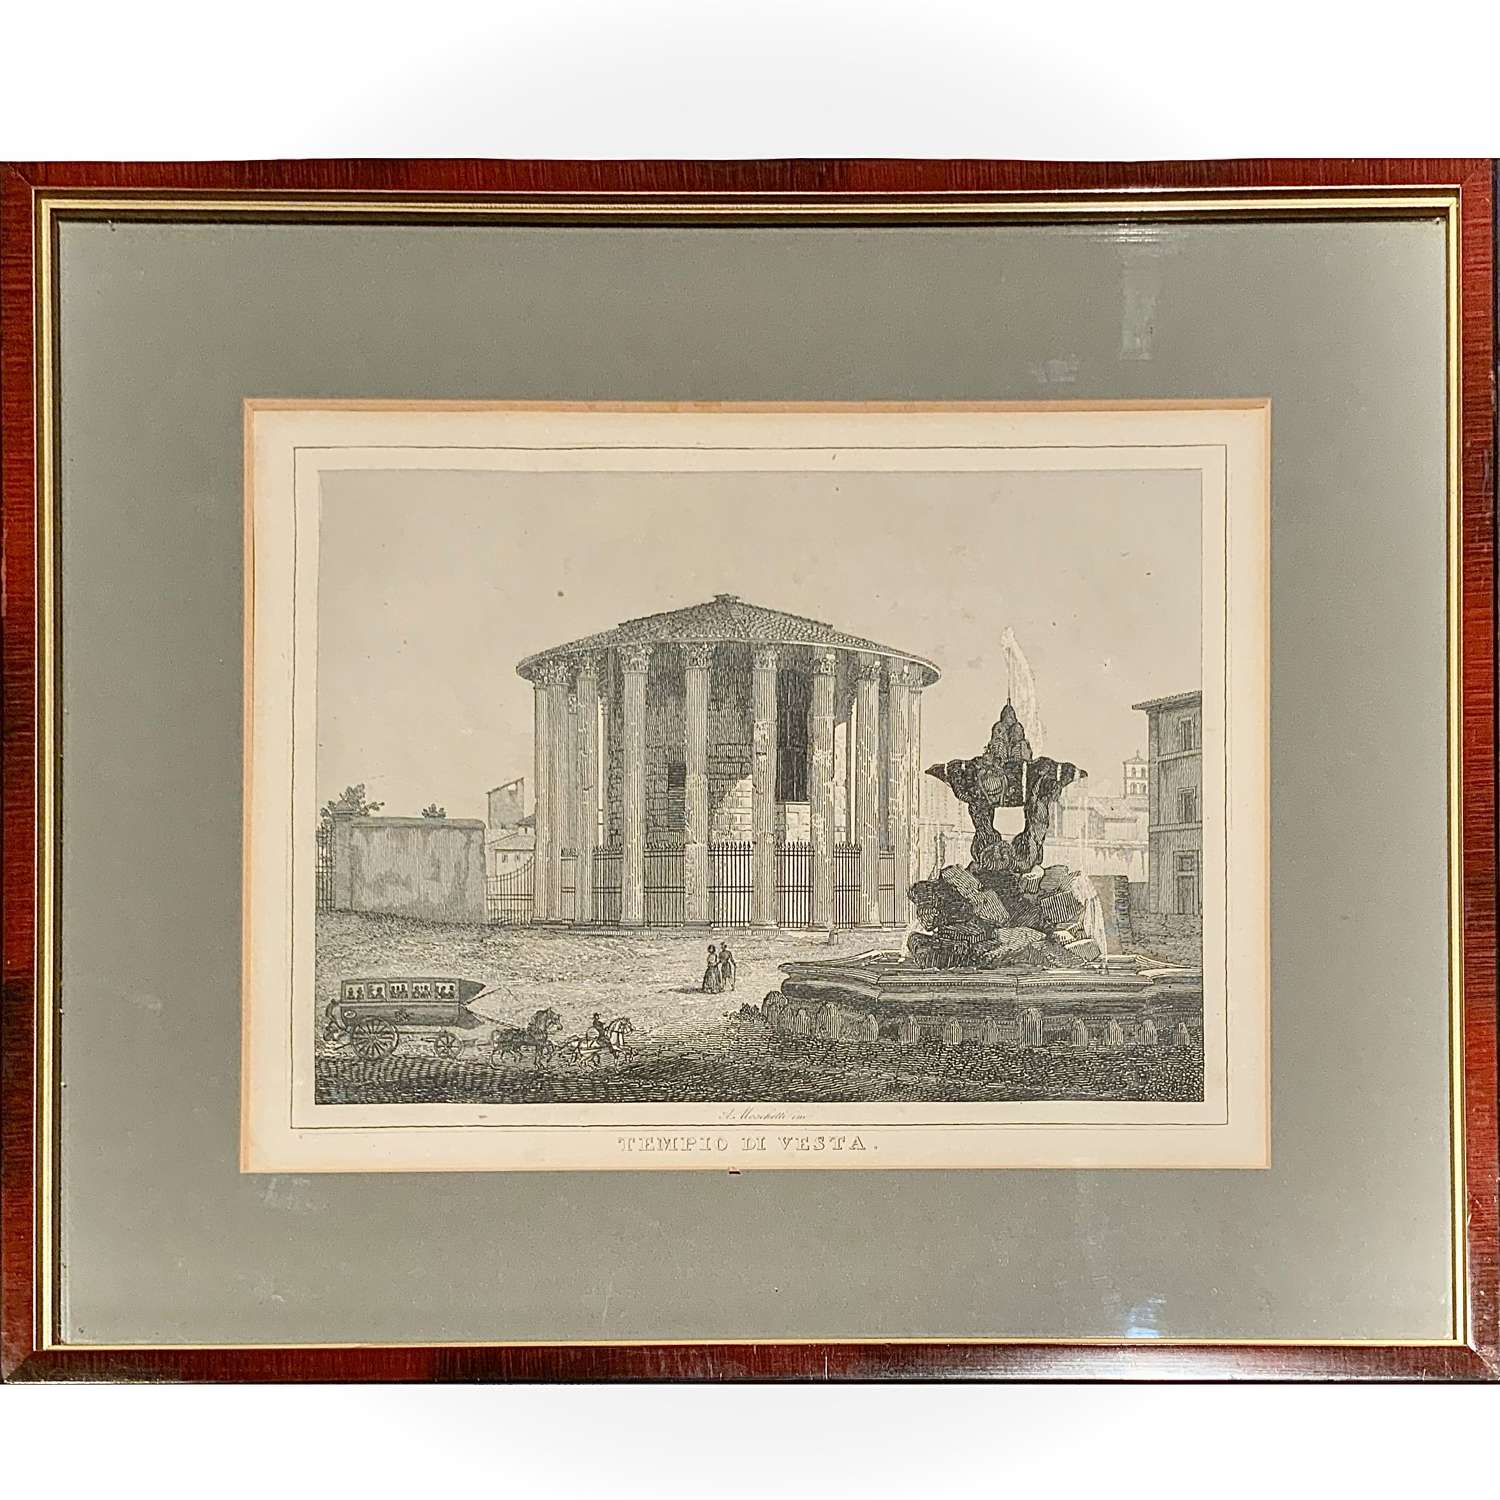 Alessandro Moschetti (fl.1828-60) “Tempio di Vesta” (Temple of Vesta)